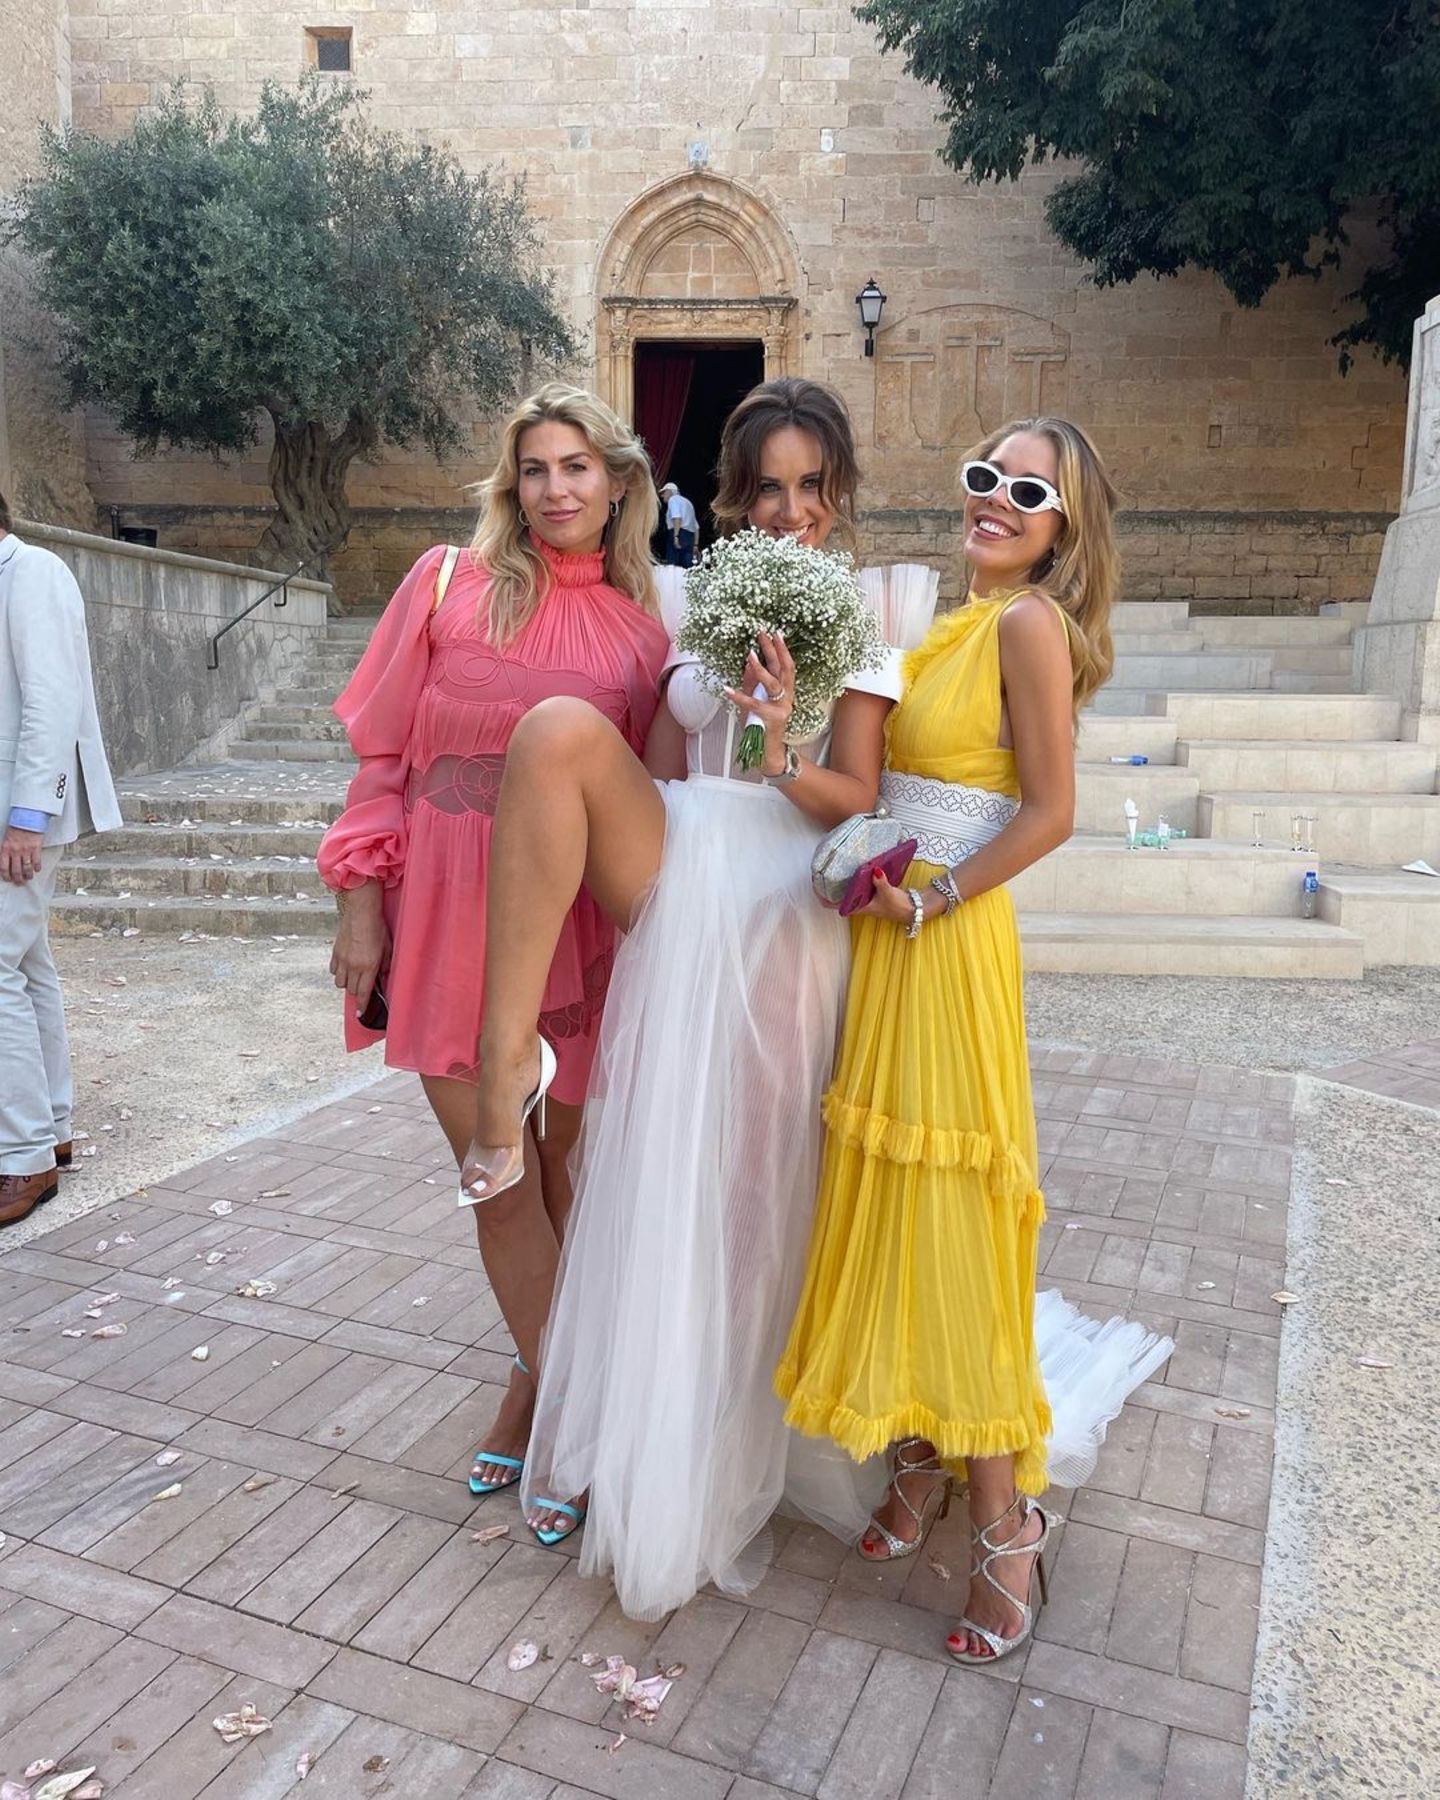 Bei der Hochzeit einer Freundin ist Victoria Swarovski wieder einmal ein absoluter Hingucker. Sie trägt ein strahlend gelbes, fließendes Kleid mit einem auffälligen weißen Taillengürtel. Glitzernde Strap-Heels, die passende Clutch und eine große Sonnenbrille sind die perfekten Begleiter für ihren Look.